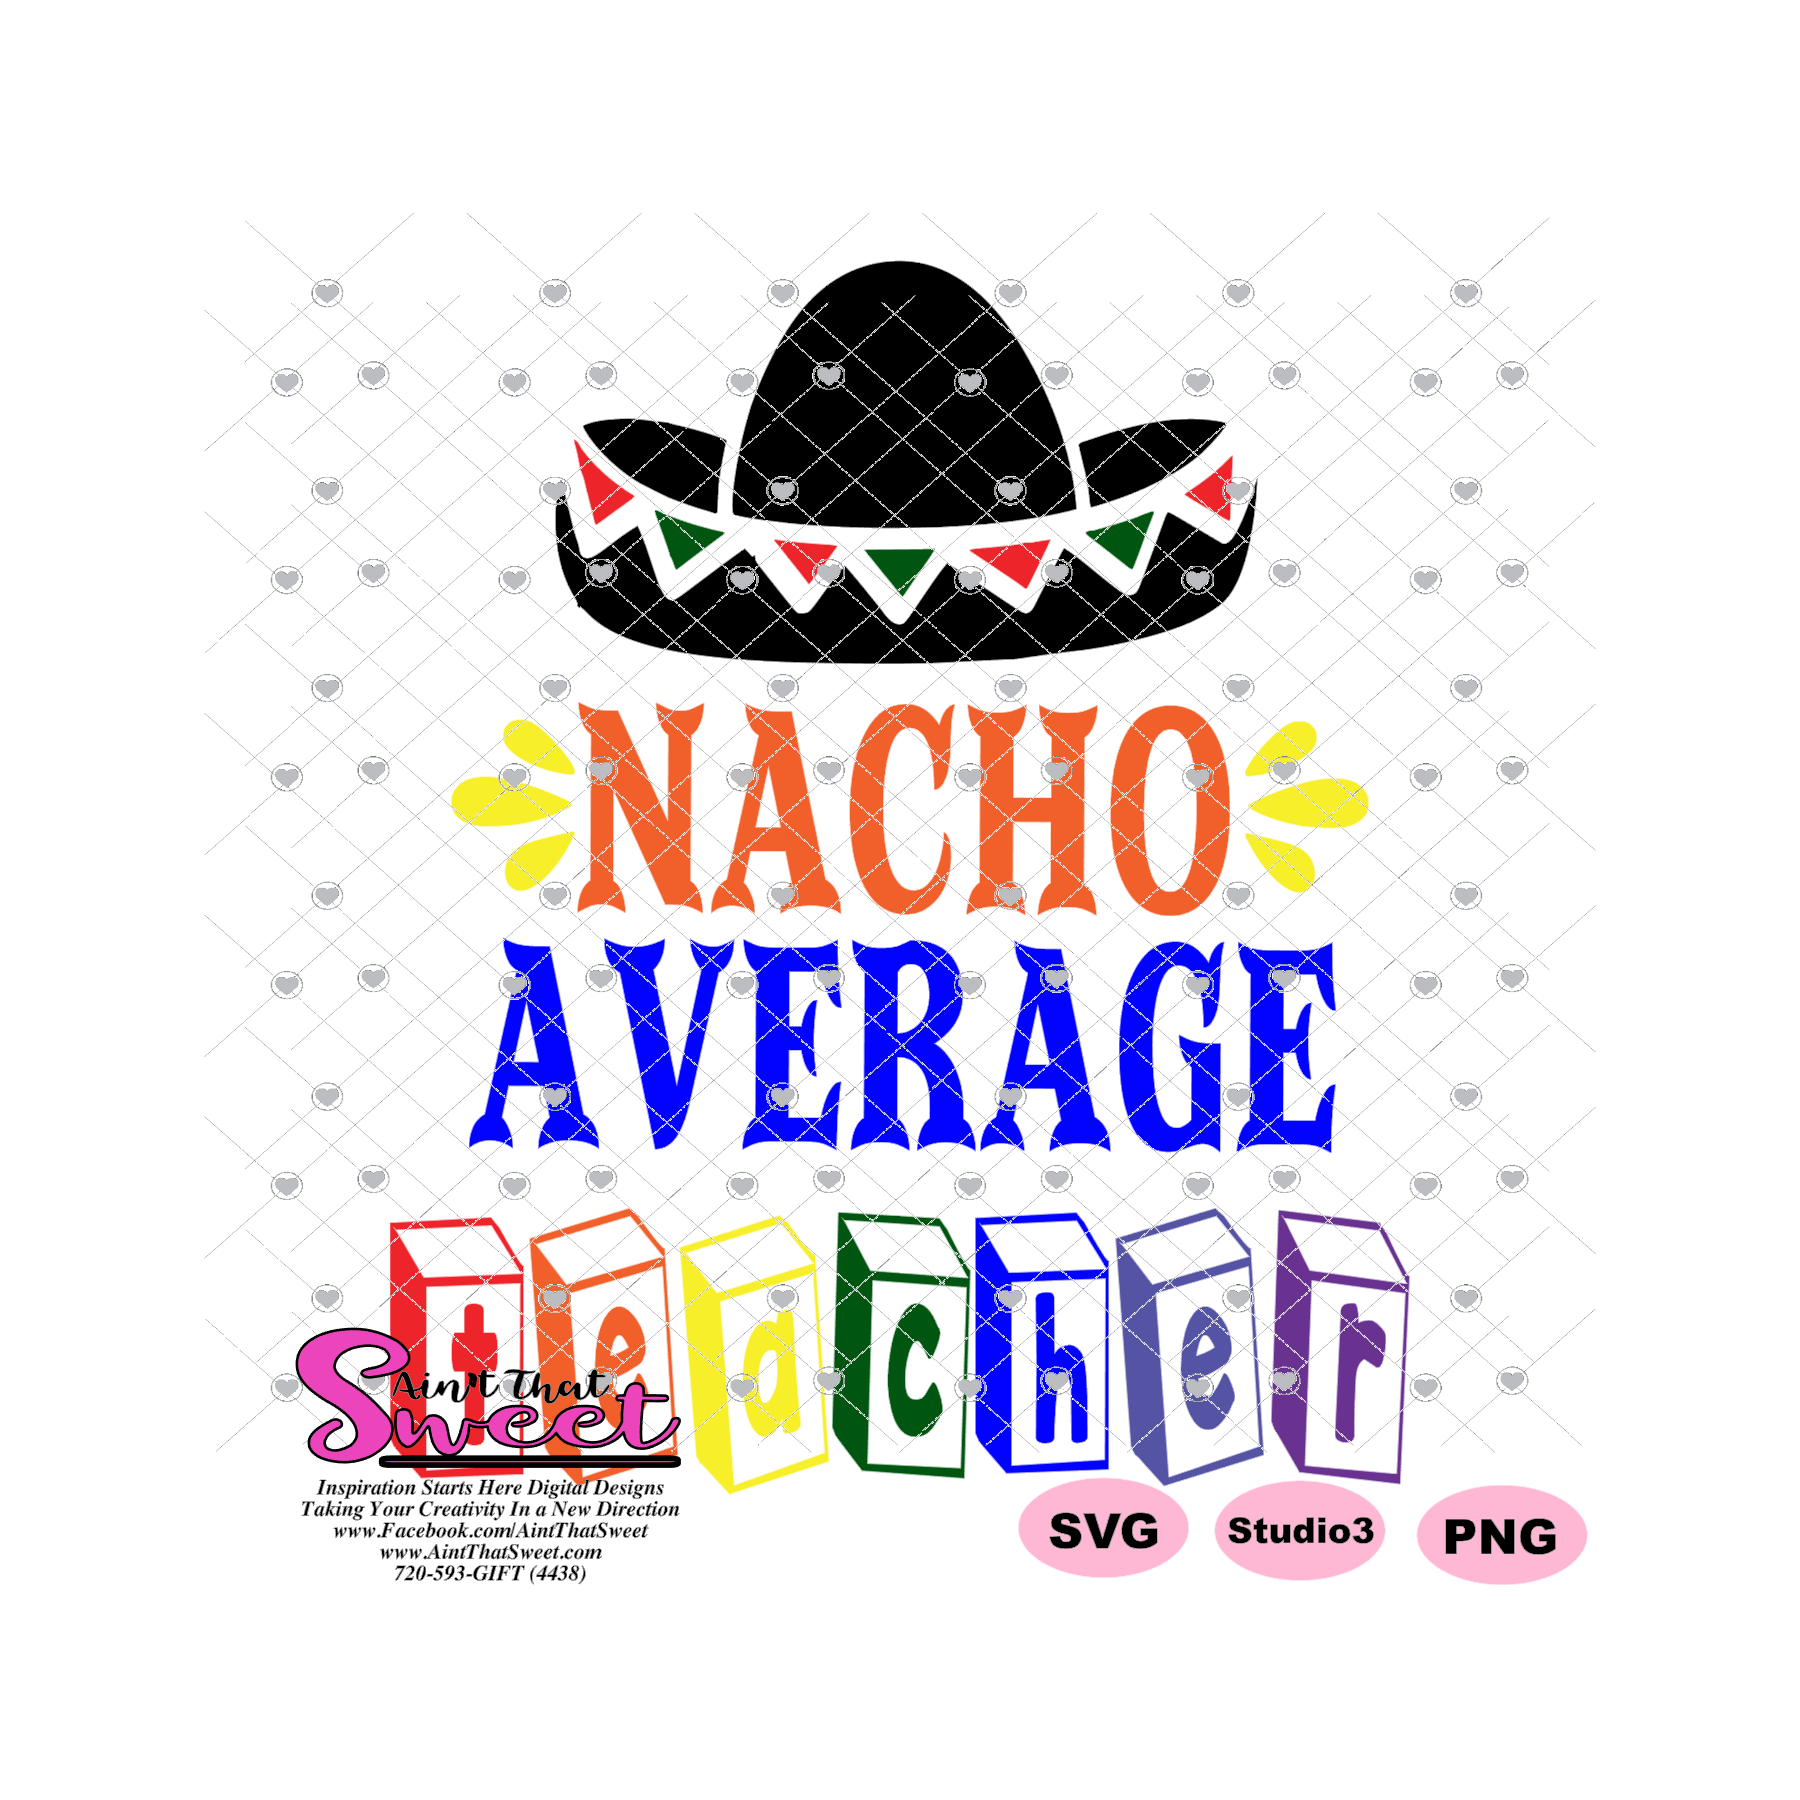 nacho-average-teacher-printable-free-printable-word-searches